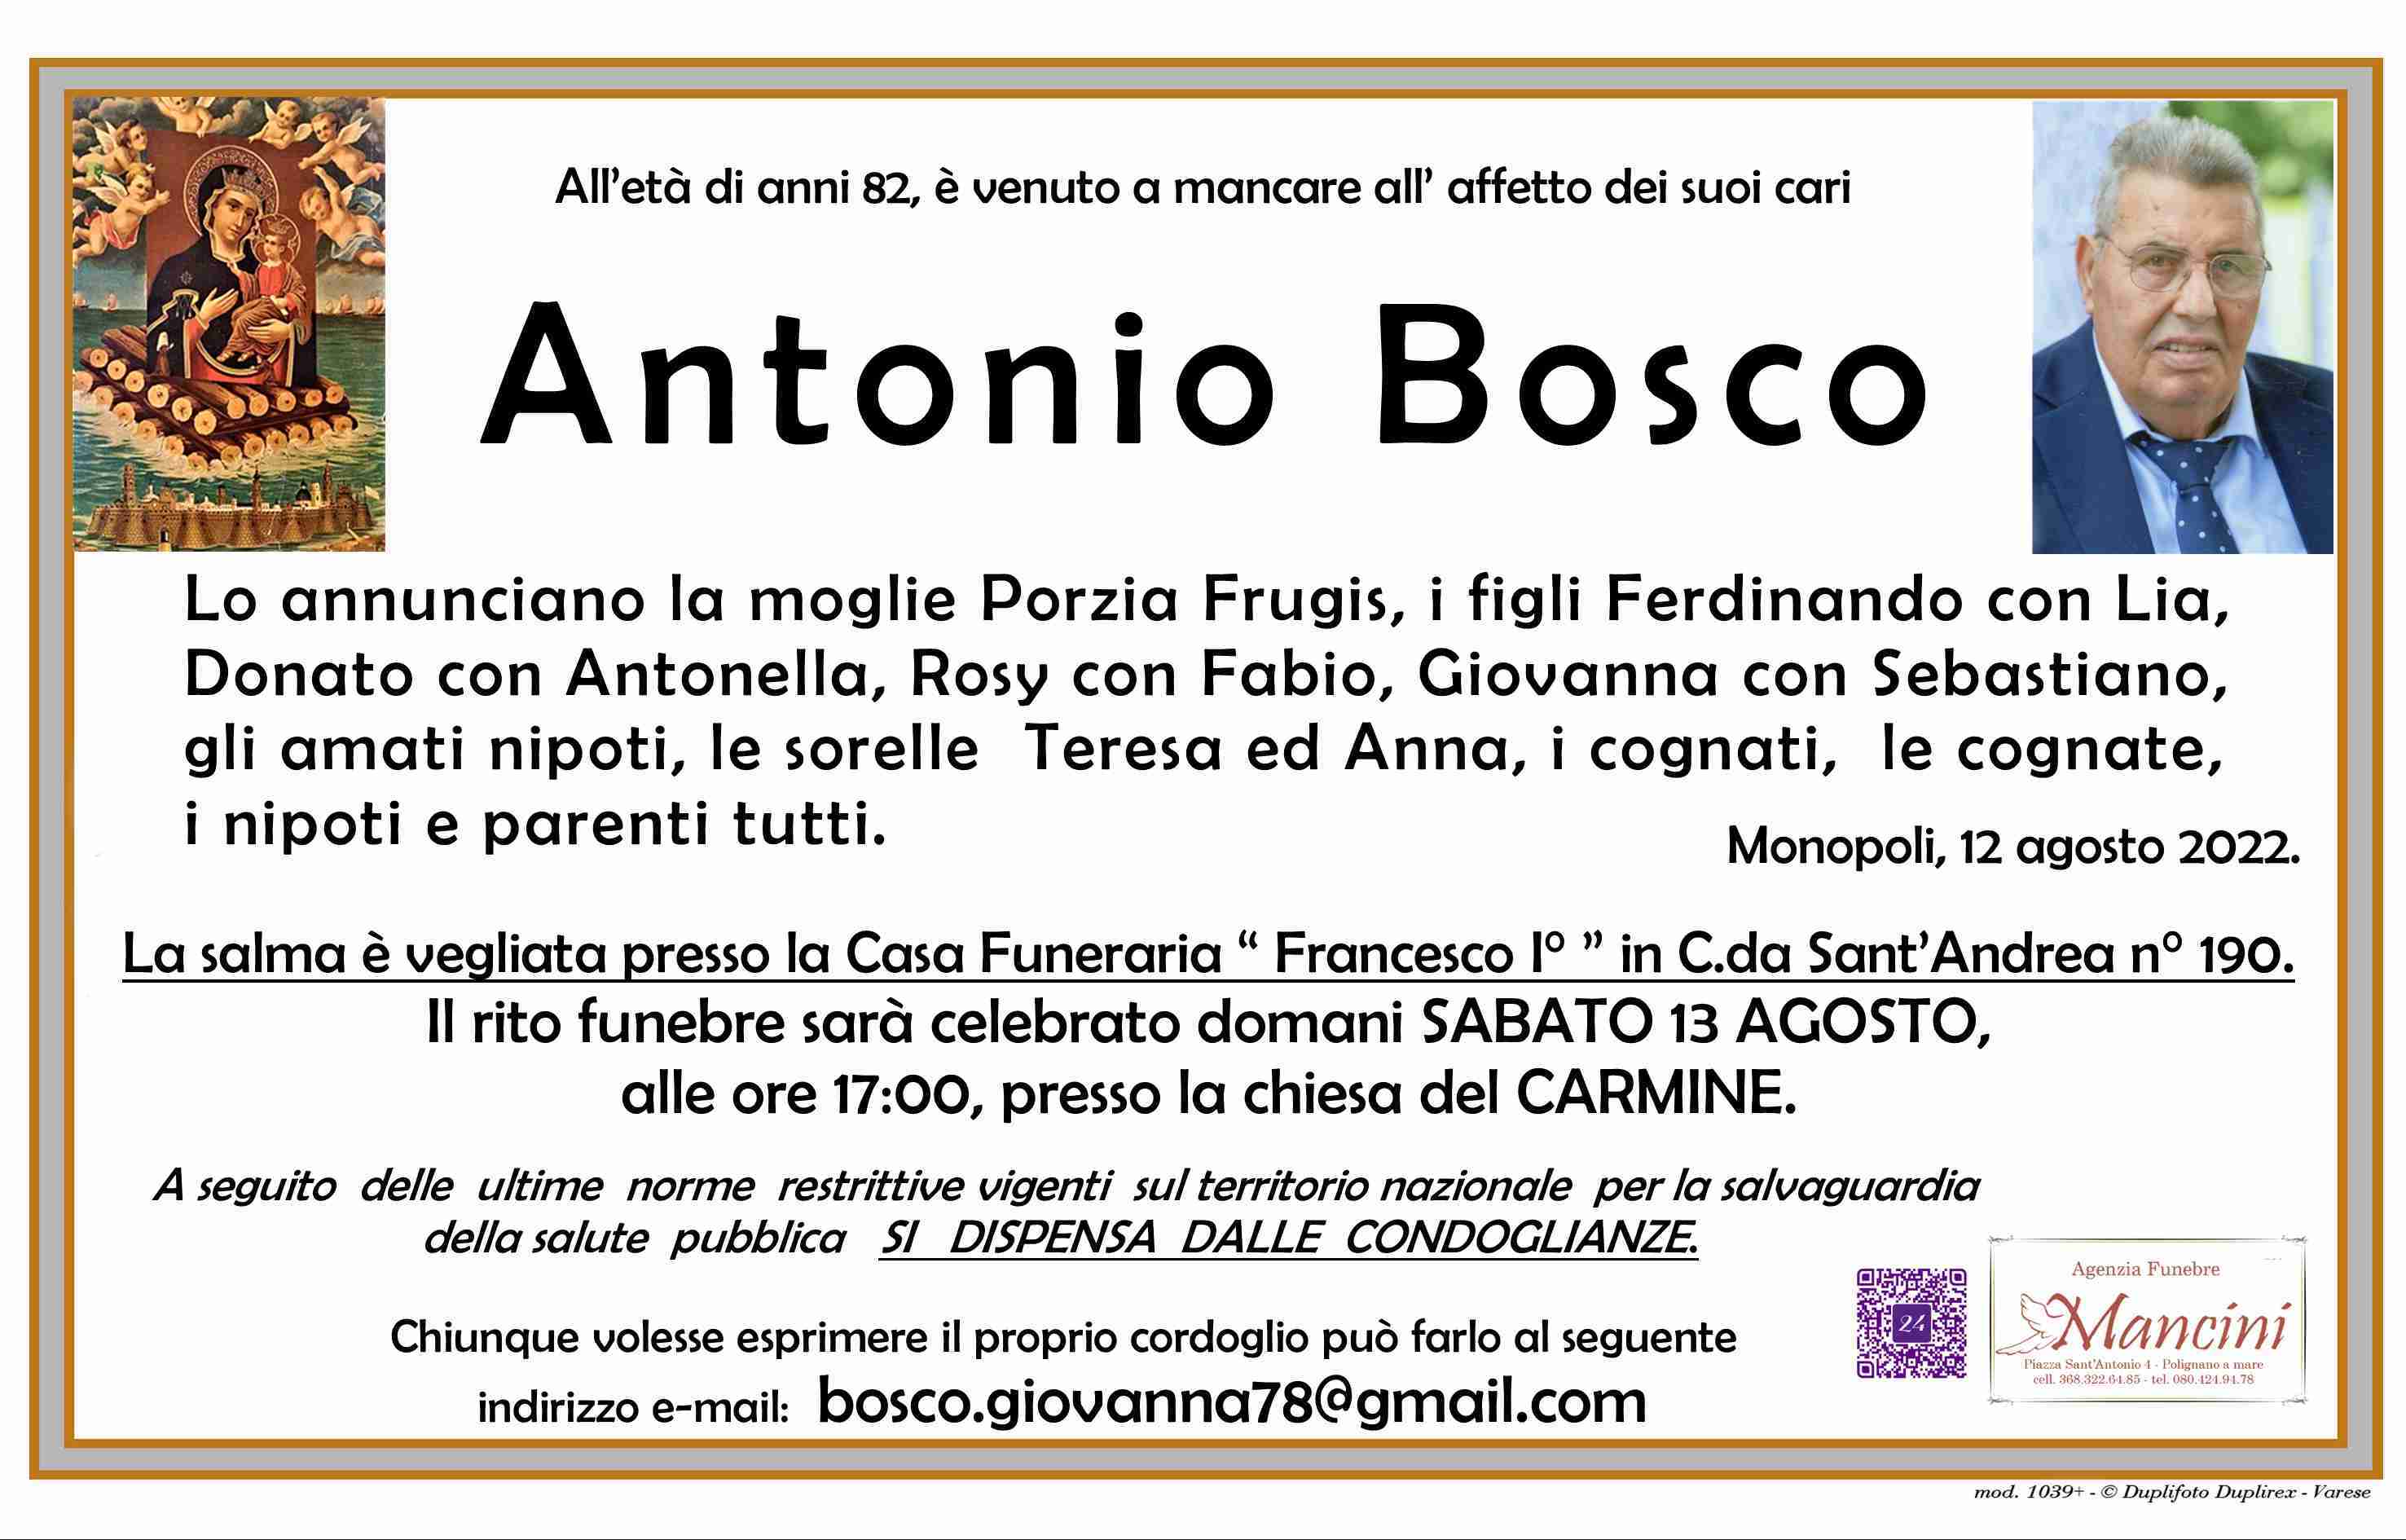 Antonio Bosco